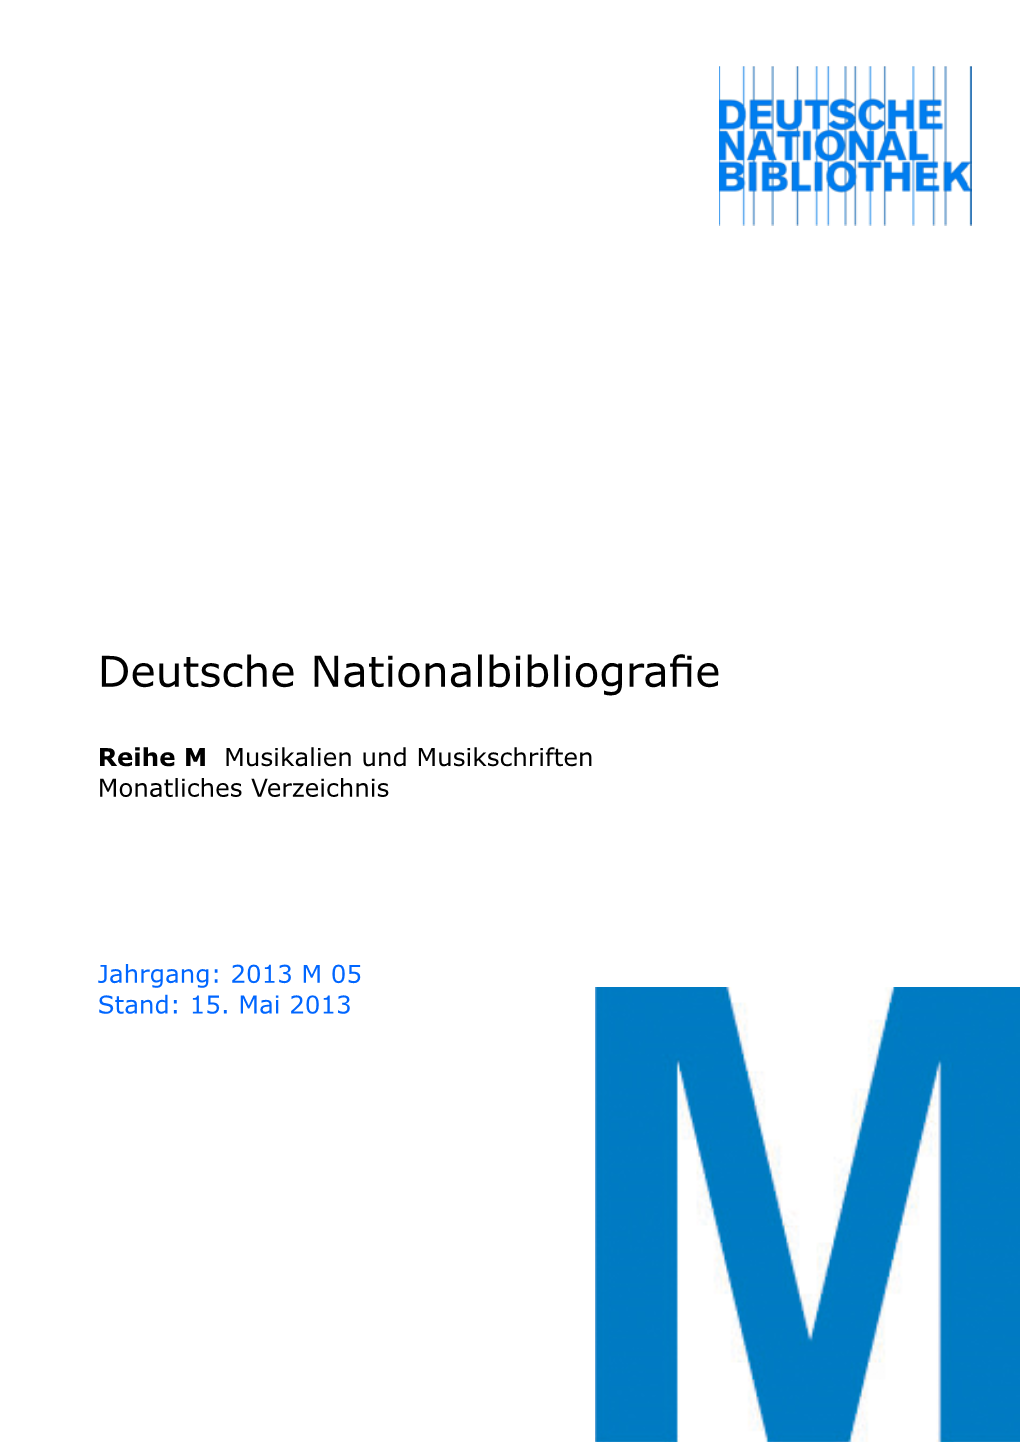 Deutsche Nationalbibliografie 2013 M 05